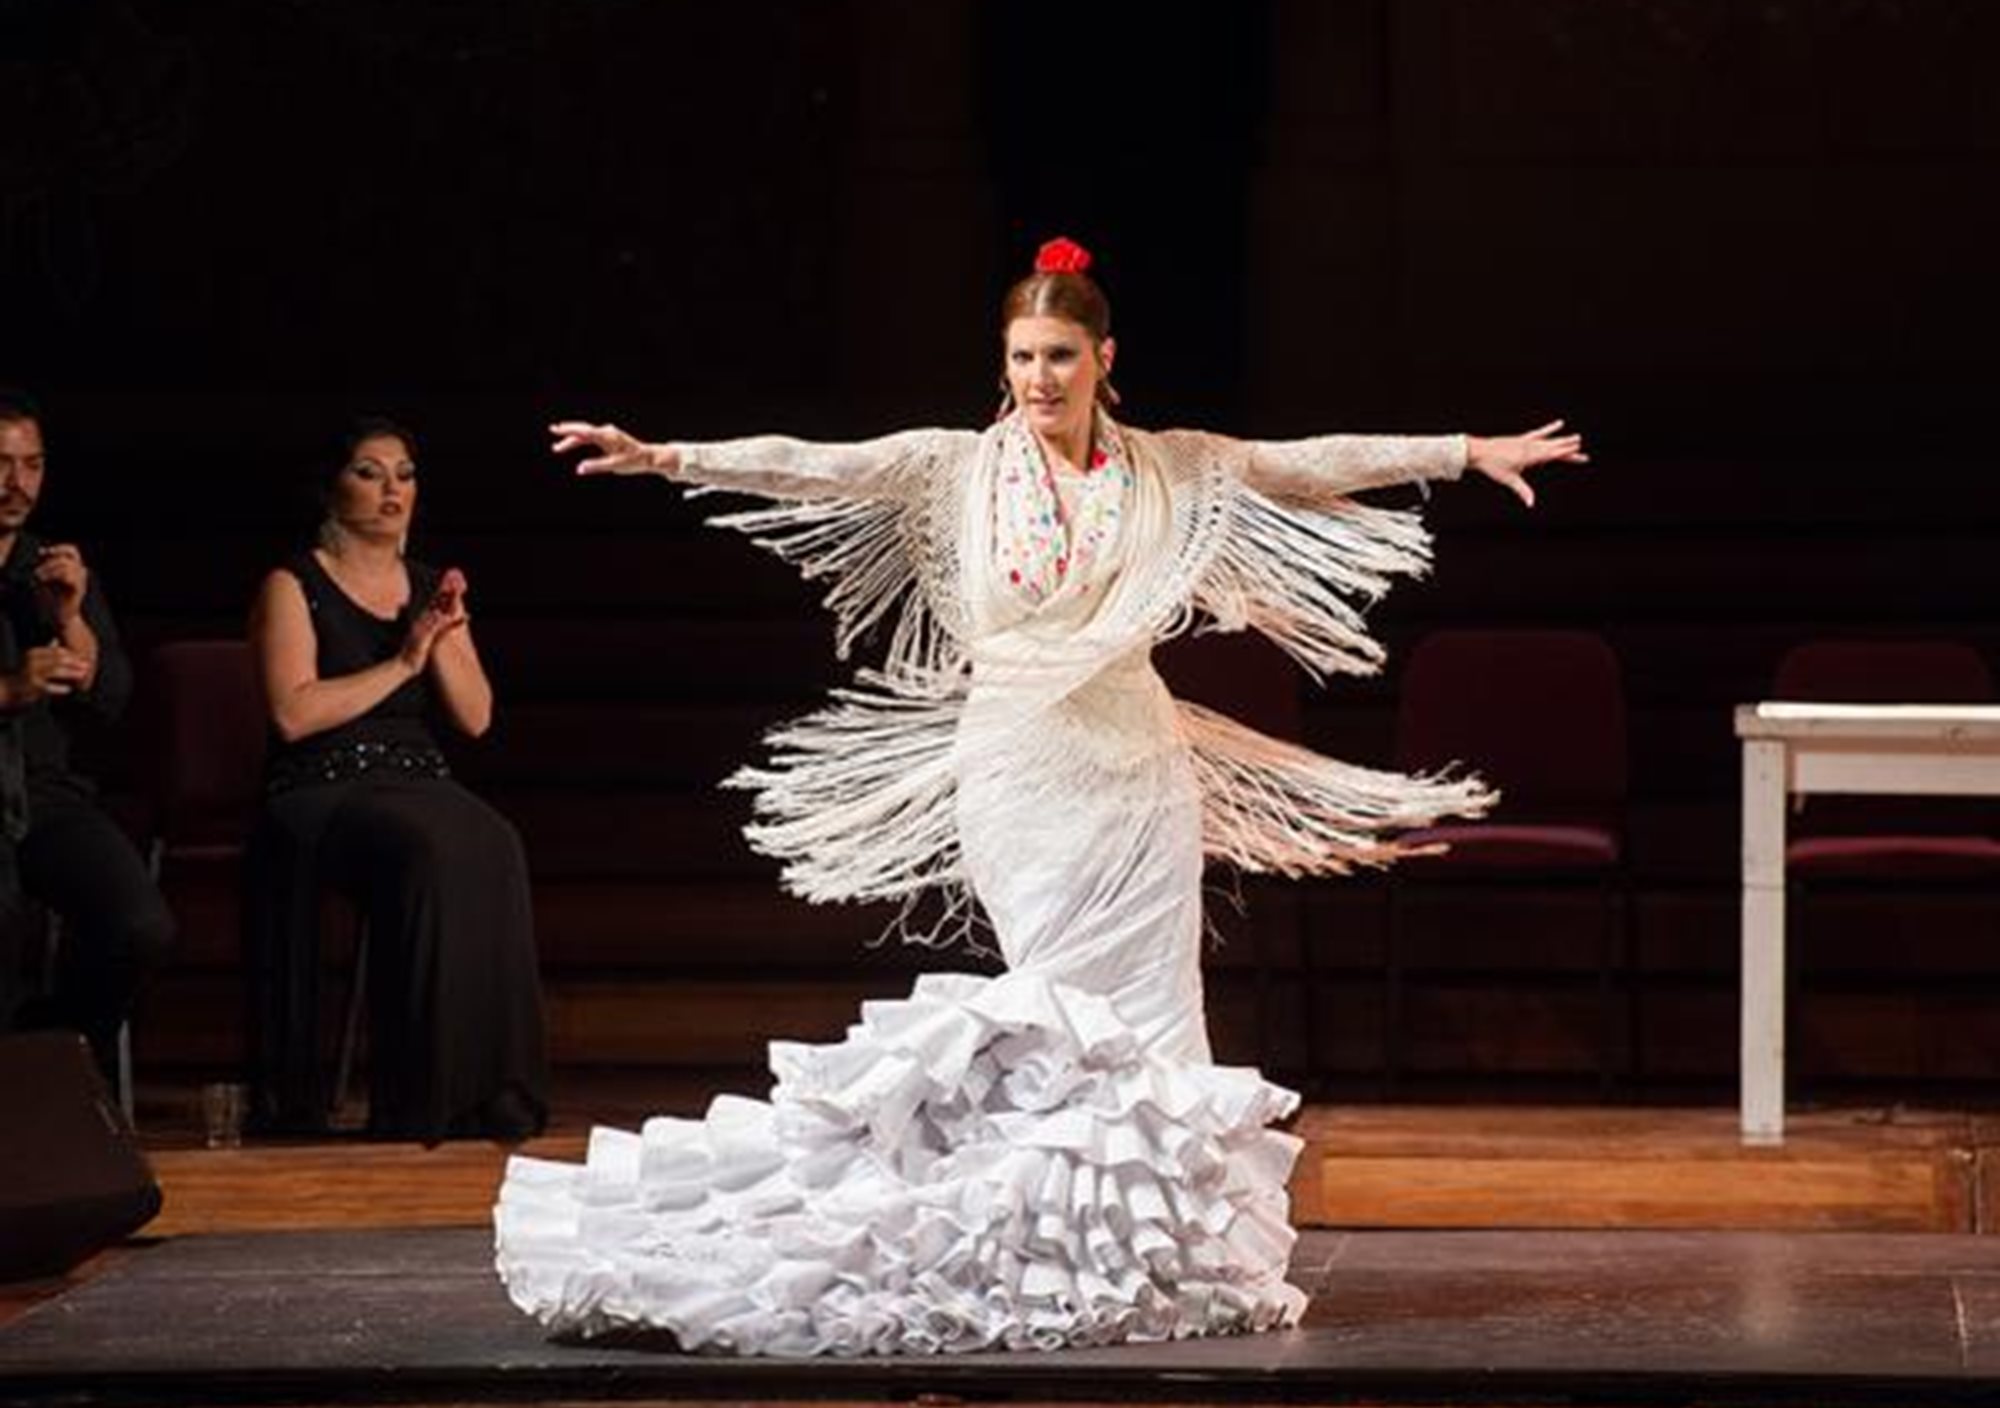 réservations visites guidées Spectacle Gran Gala Flamenco au Palau de la Música Catalana à Barcelone billets visiter